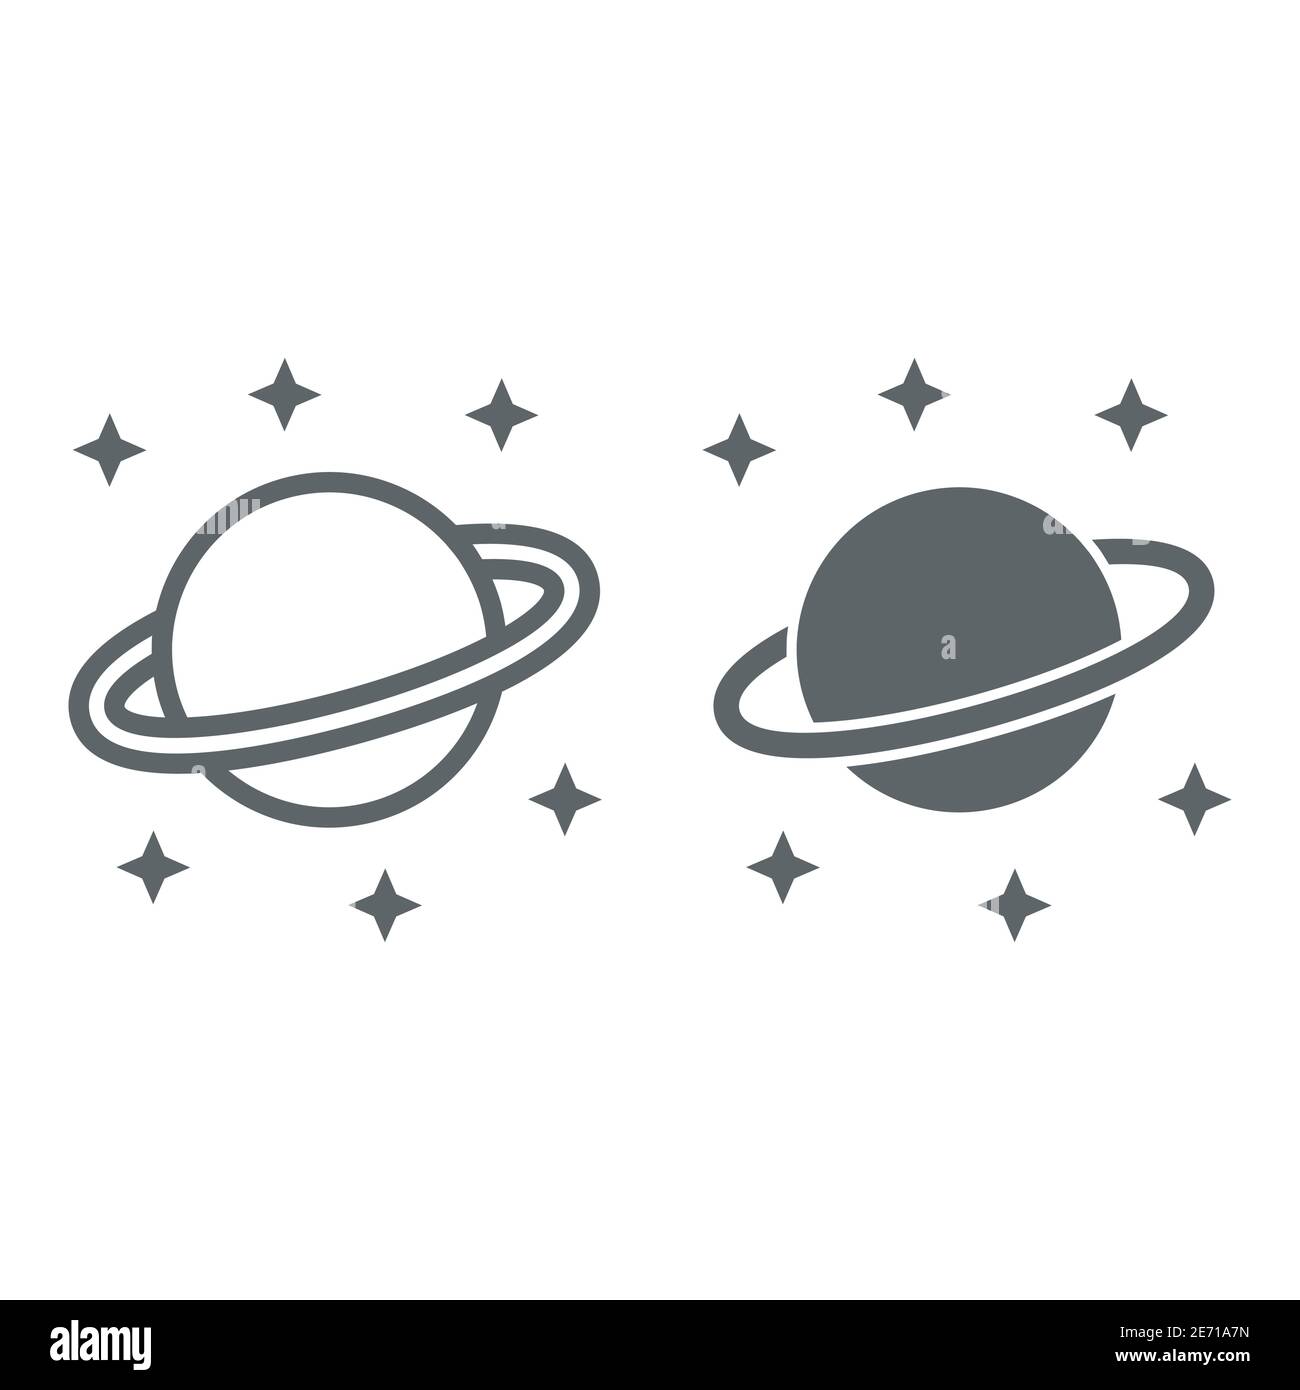 La linea e l'icona del pianeta Saturno, il concetto di spazio, il pianeta e le stelle su sfondo bianco, Saturno con l'icona del sistema ad anello planetario in stile contorno Illustrazione Vettoriale